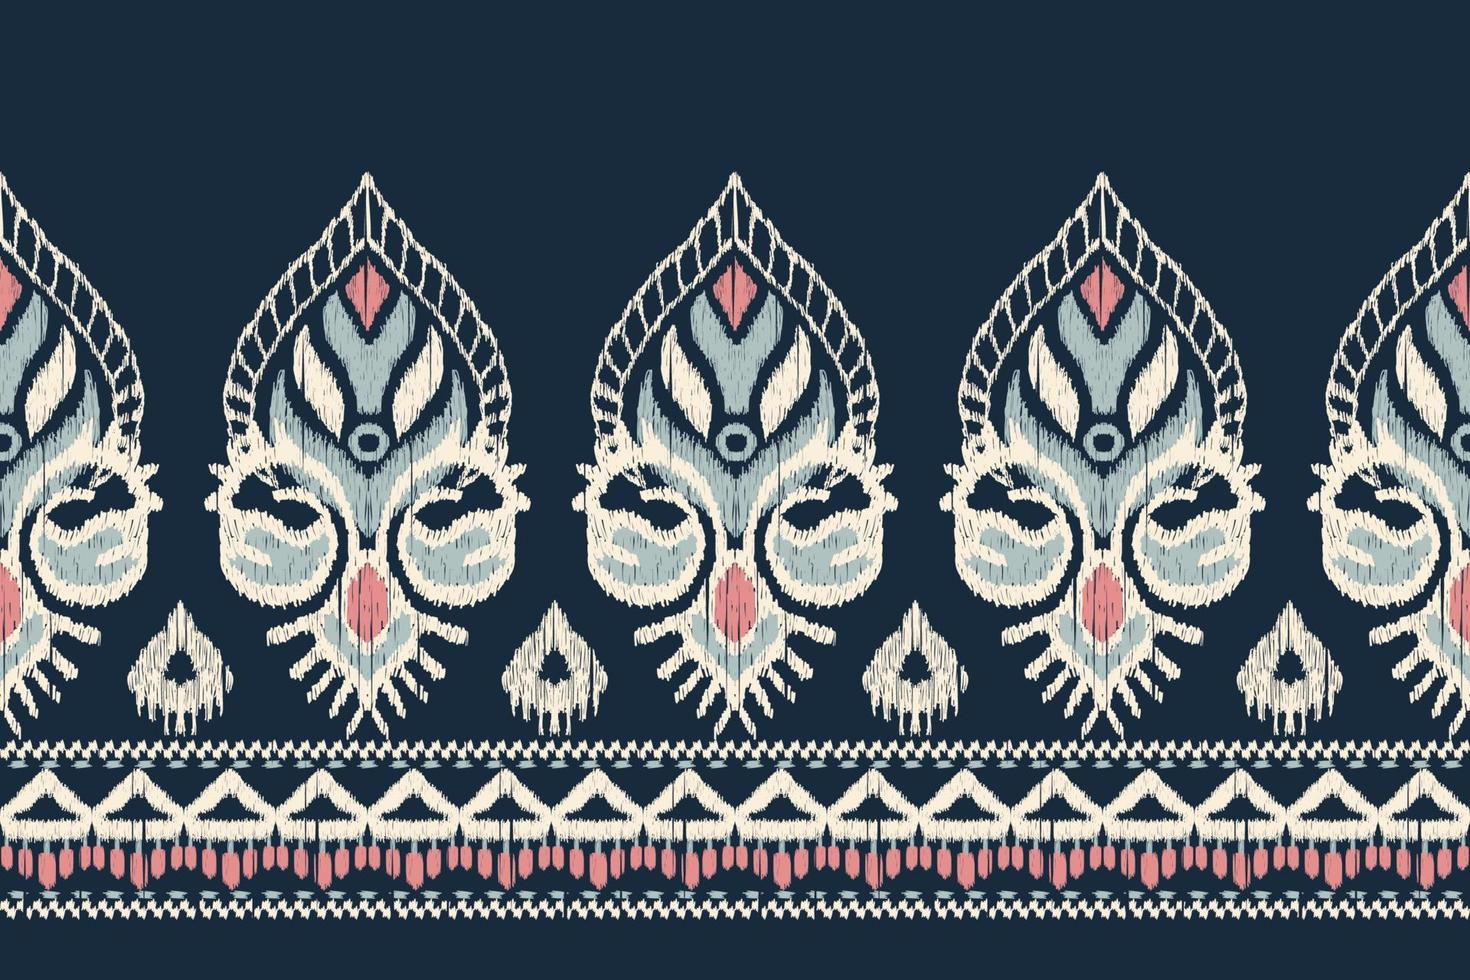 broderie cachemire florale ikat sur fond bleu marine.motif oriental ethnique géométrique traditional.aztec style abstract vector illustration.design pour la texture, le tissu, les vêtements, l'emballage, l'écharpe, le sarong.